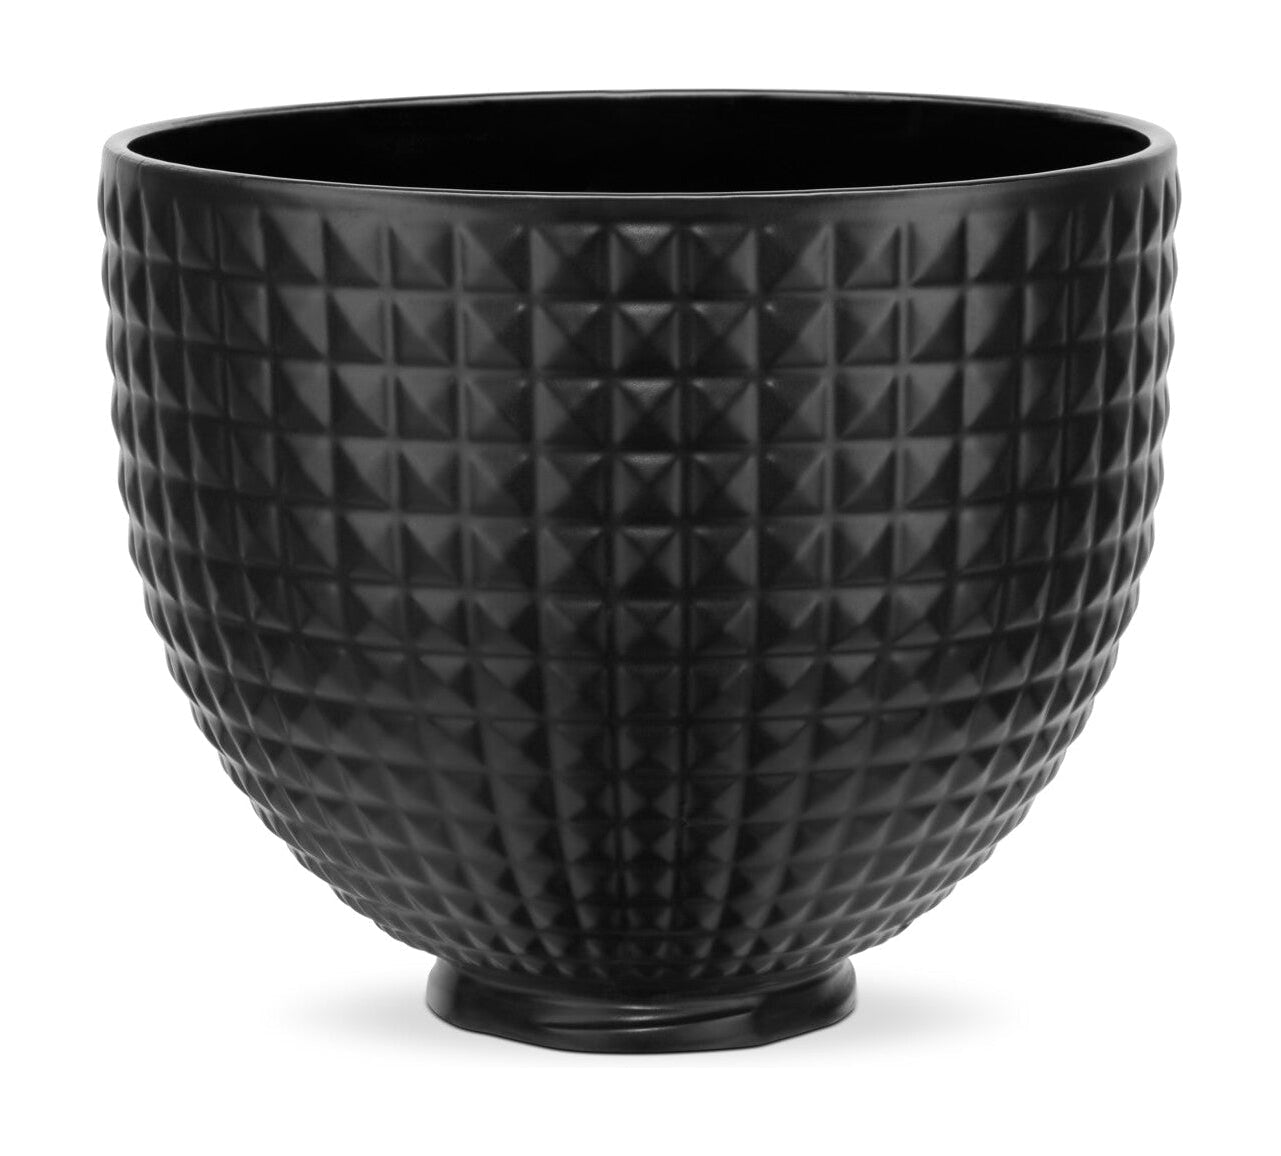 Eldhúsaðstoð keramikskál 4,7 L, svartur nagla